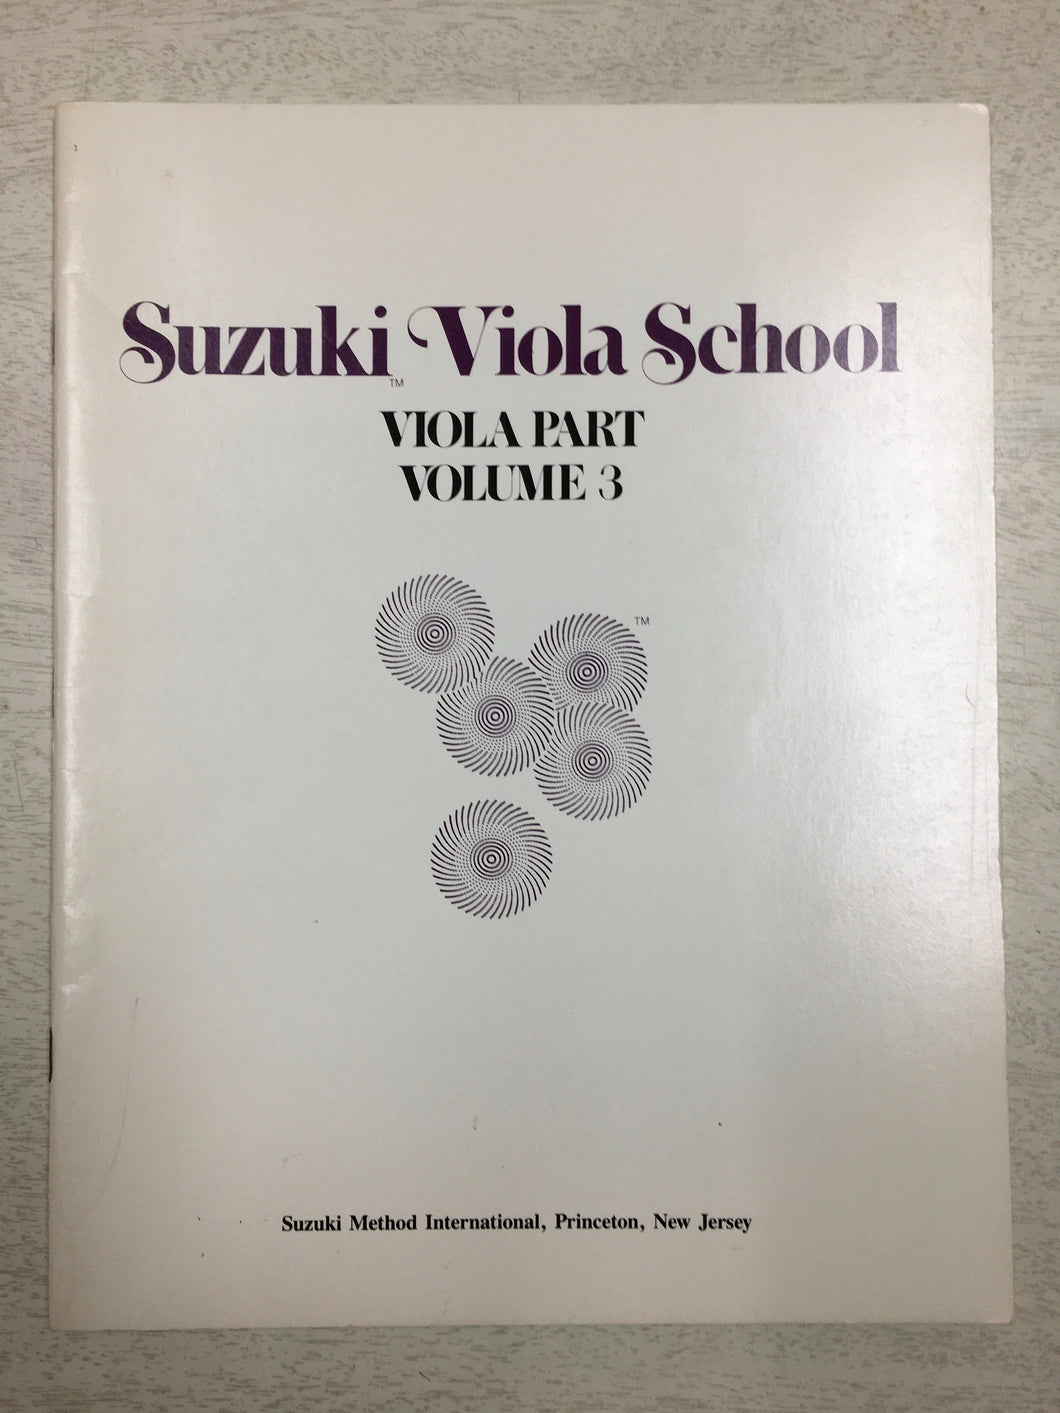 Suzuki Viola School - Volume 3: Viola Part